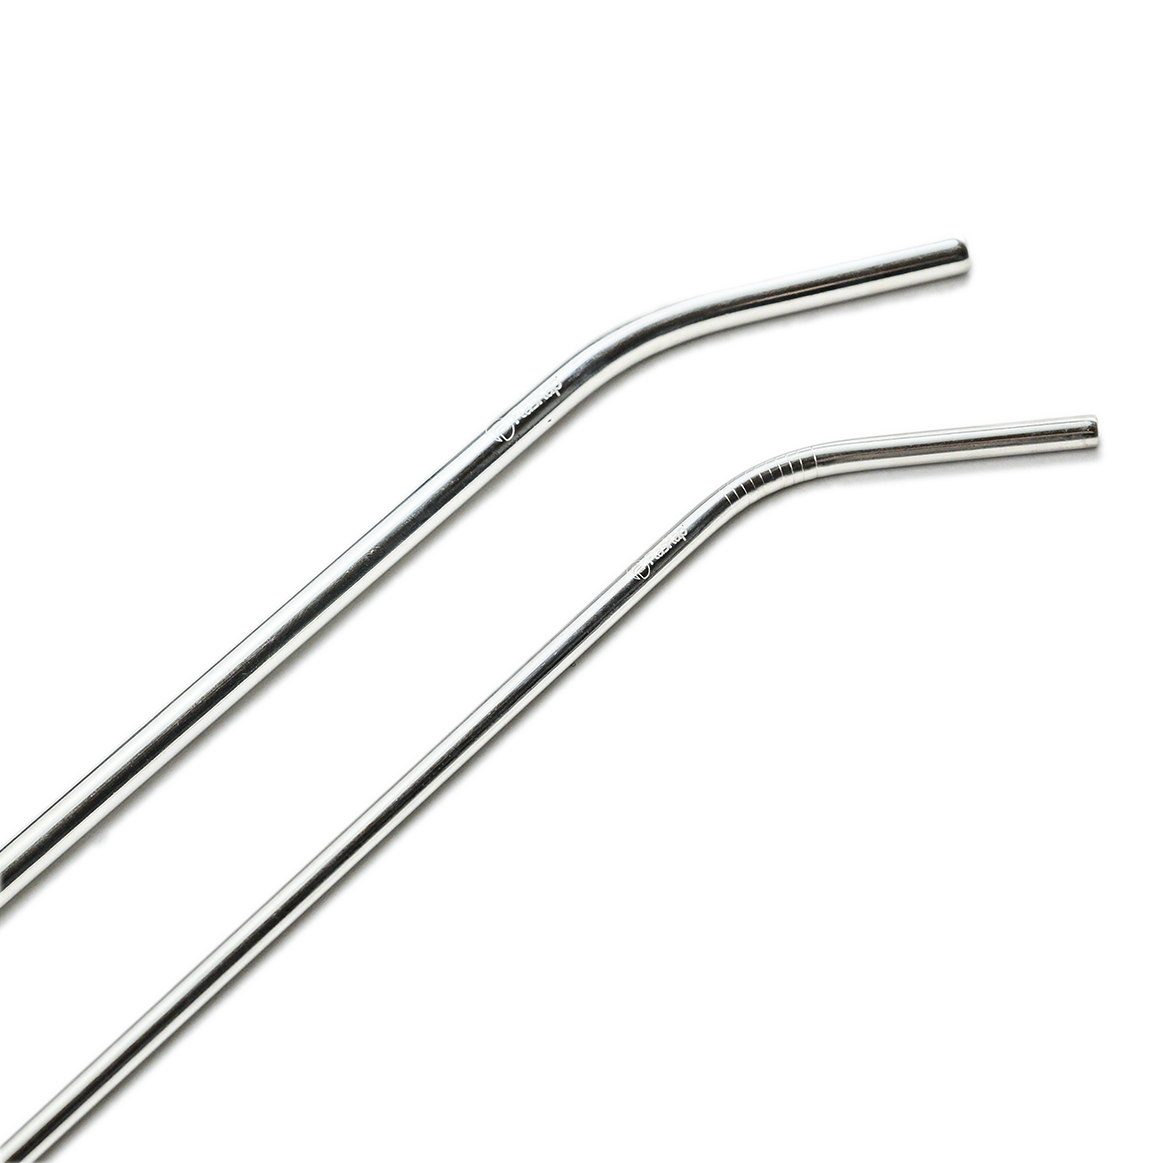 Metal Straw